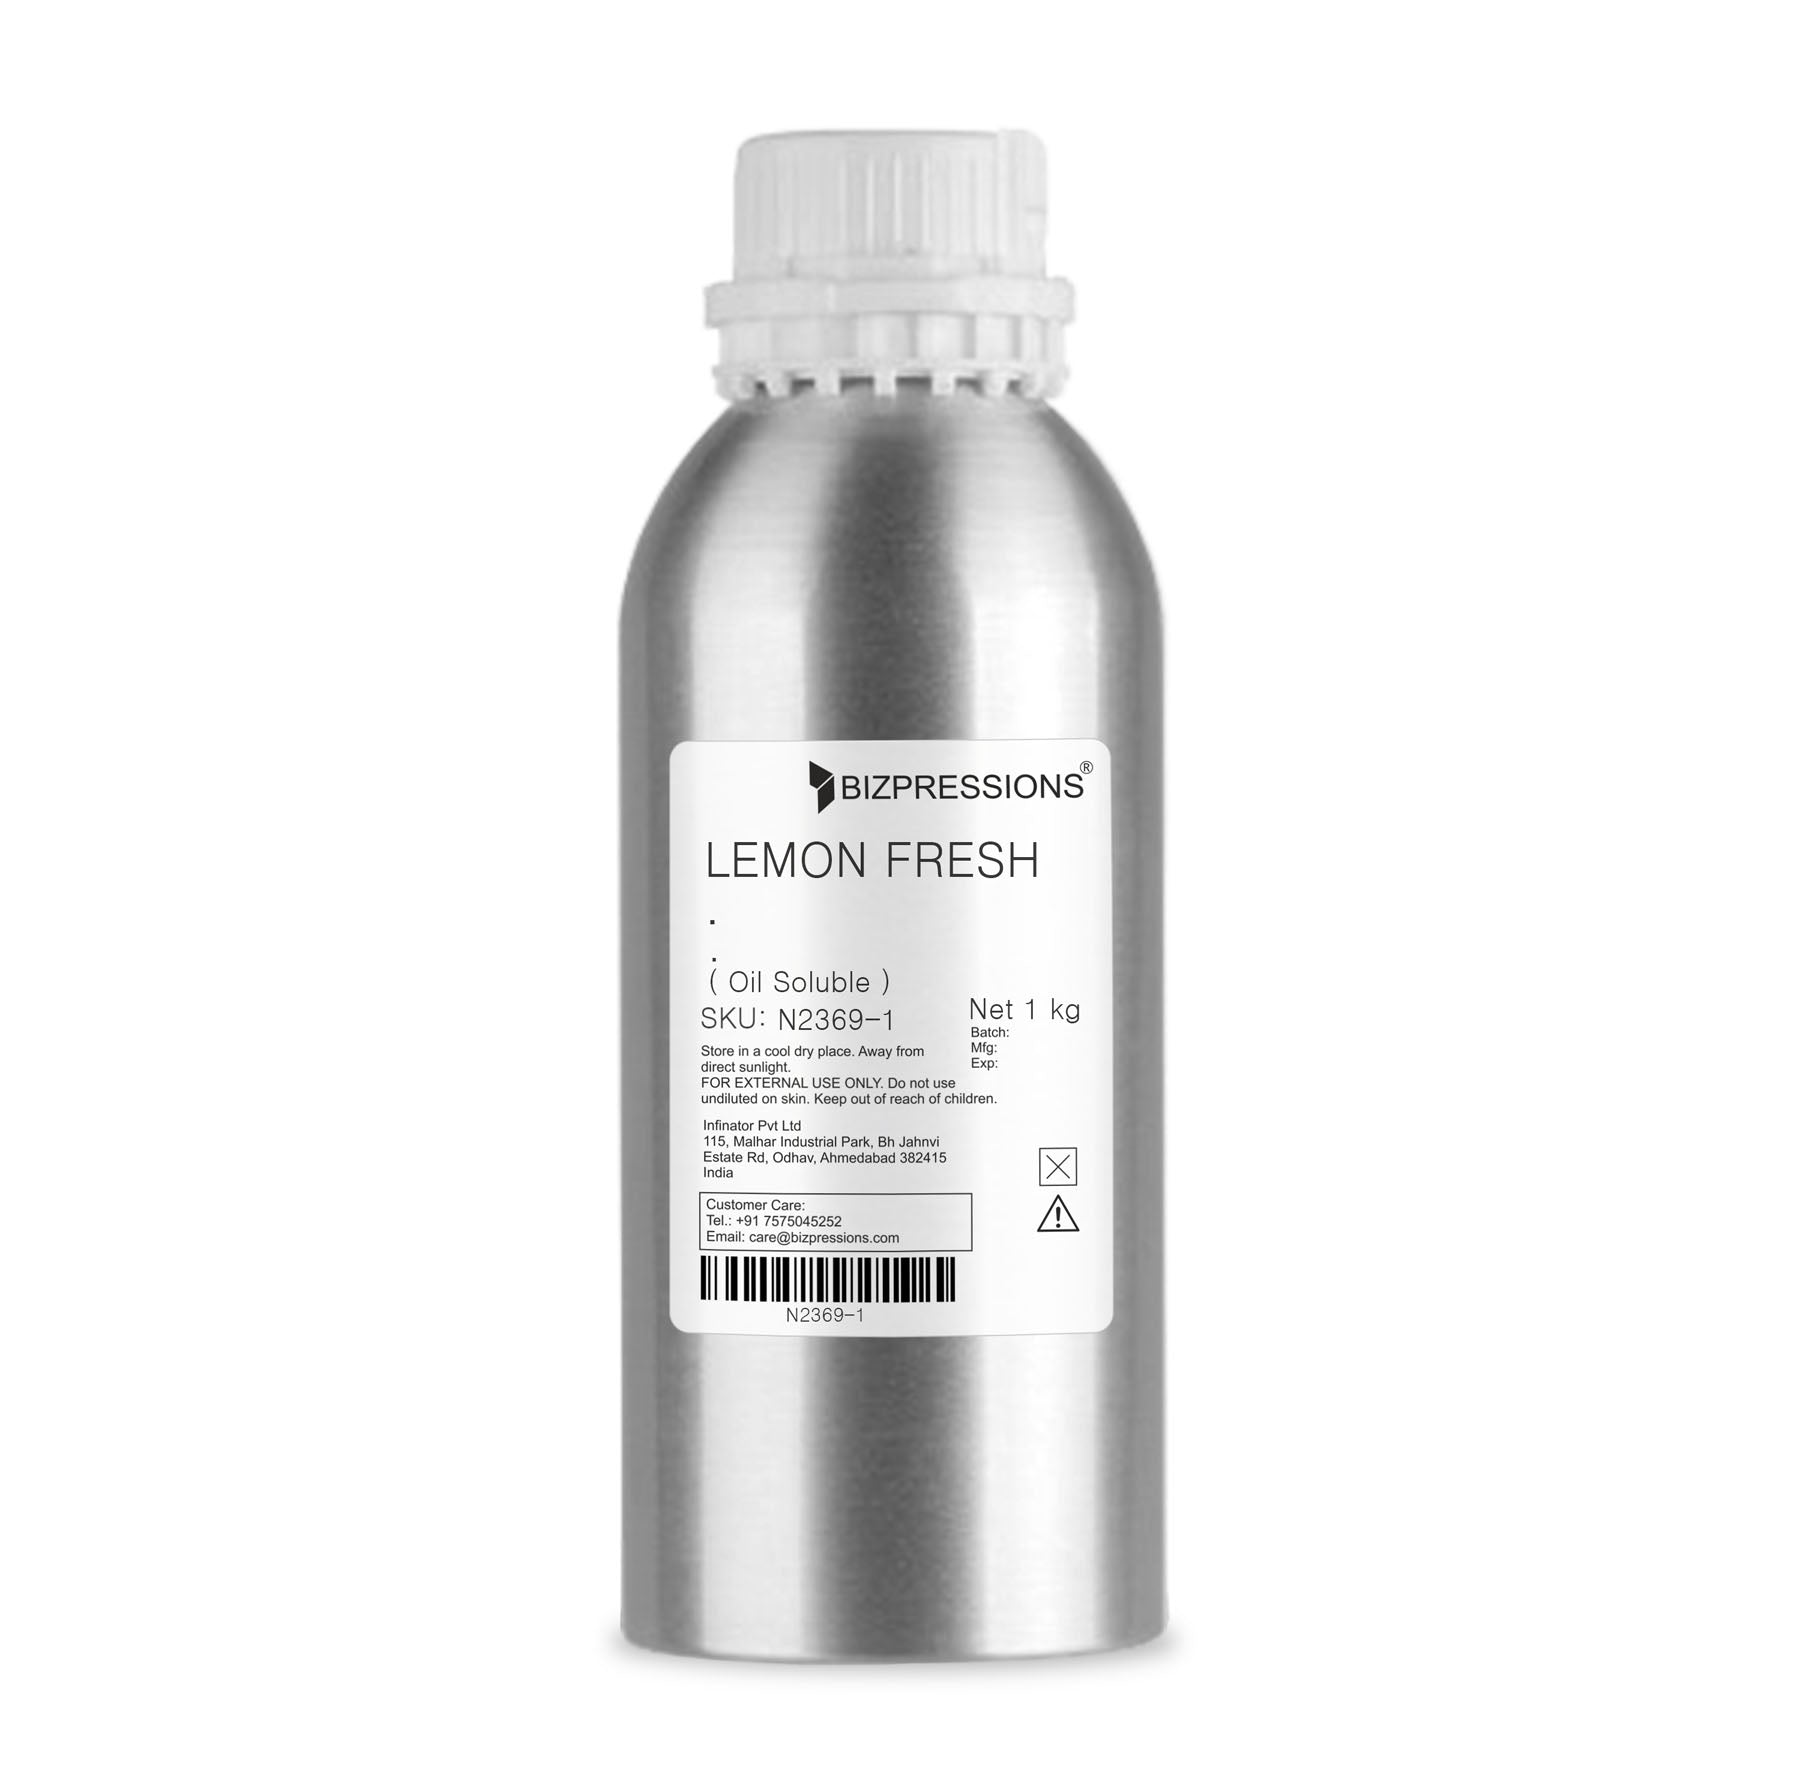 LEMON FRESH - Fragrance ( Oil Soluble ) - 1 kg